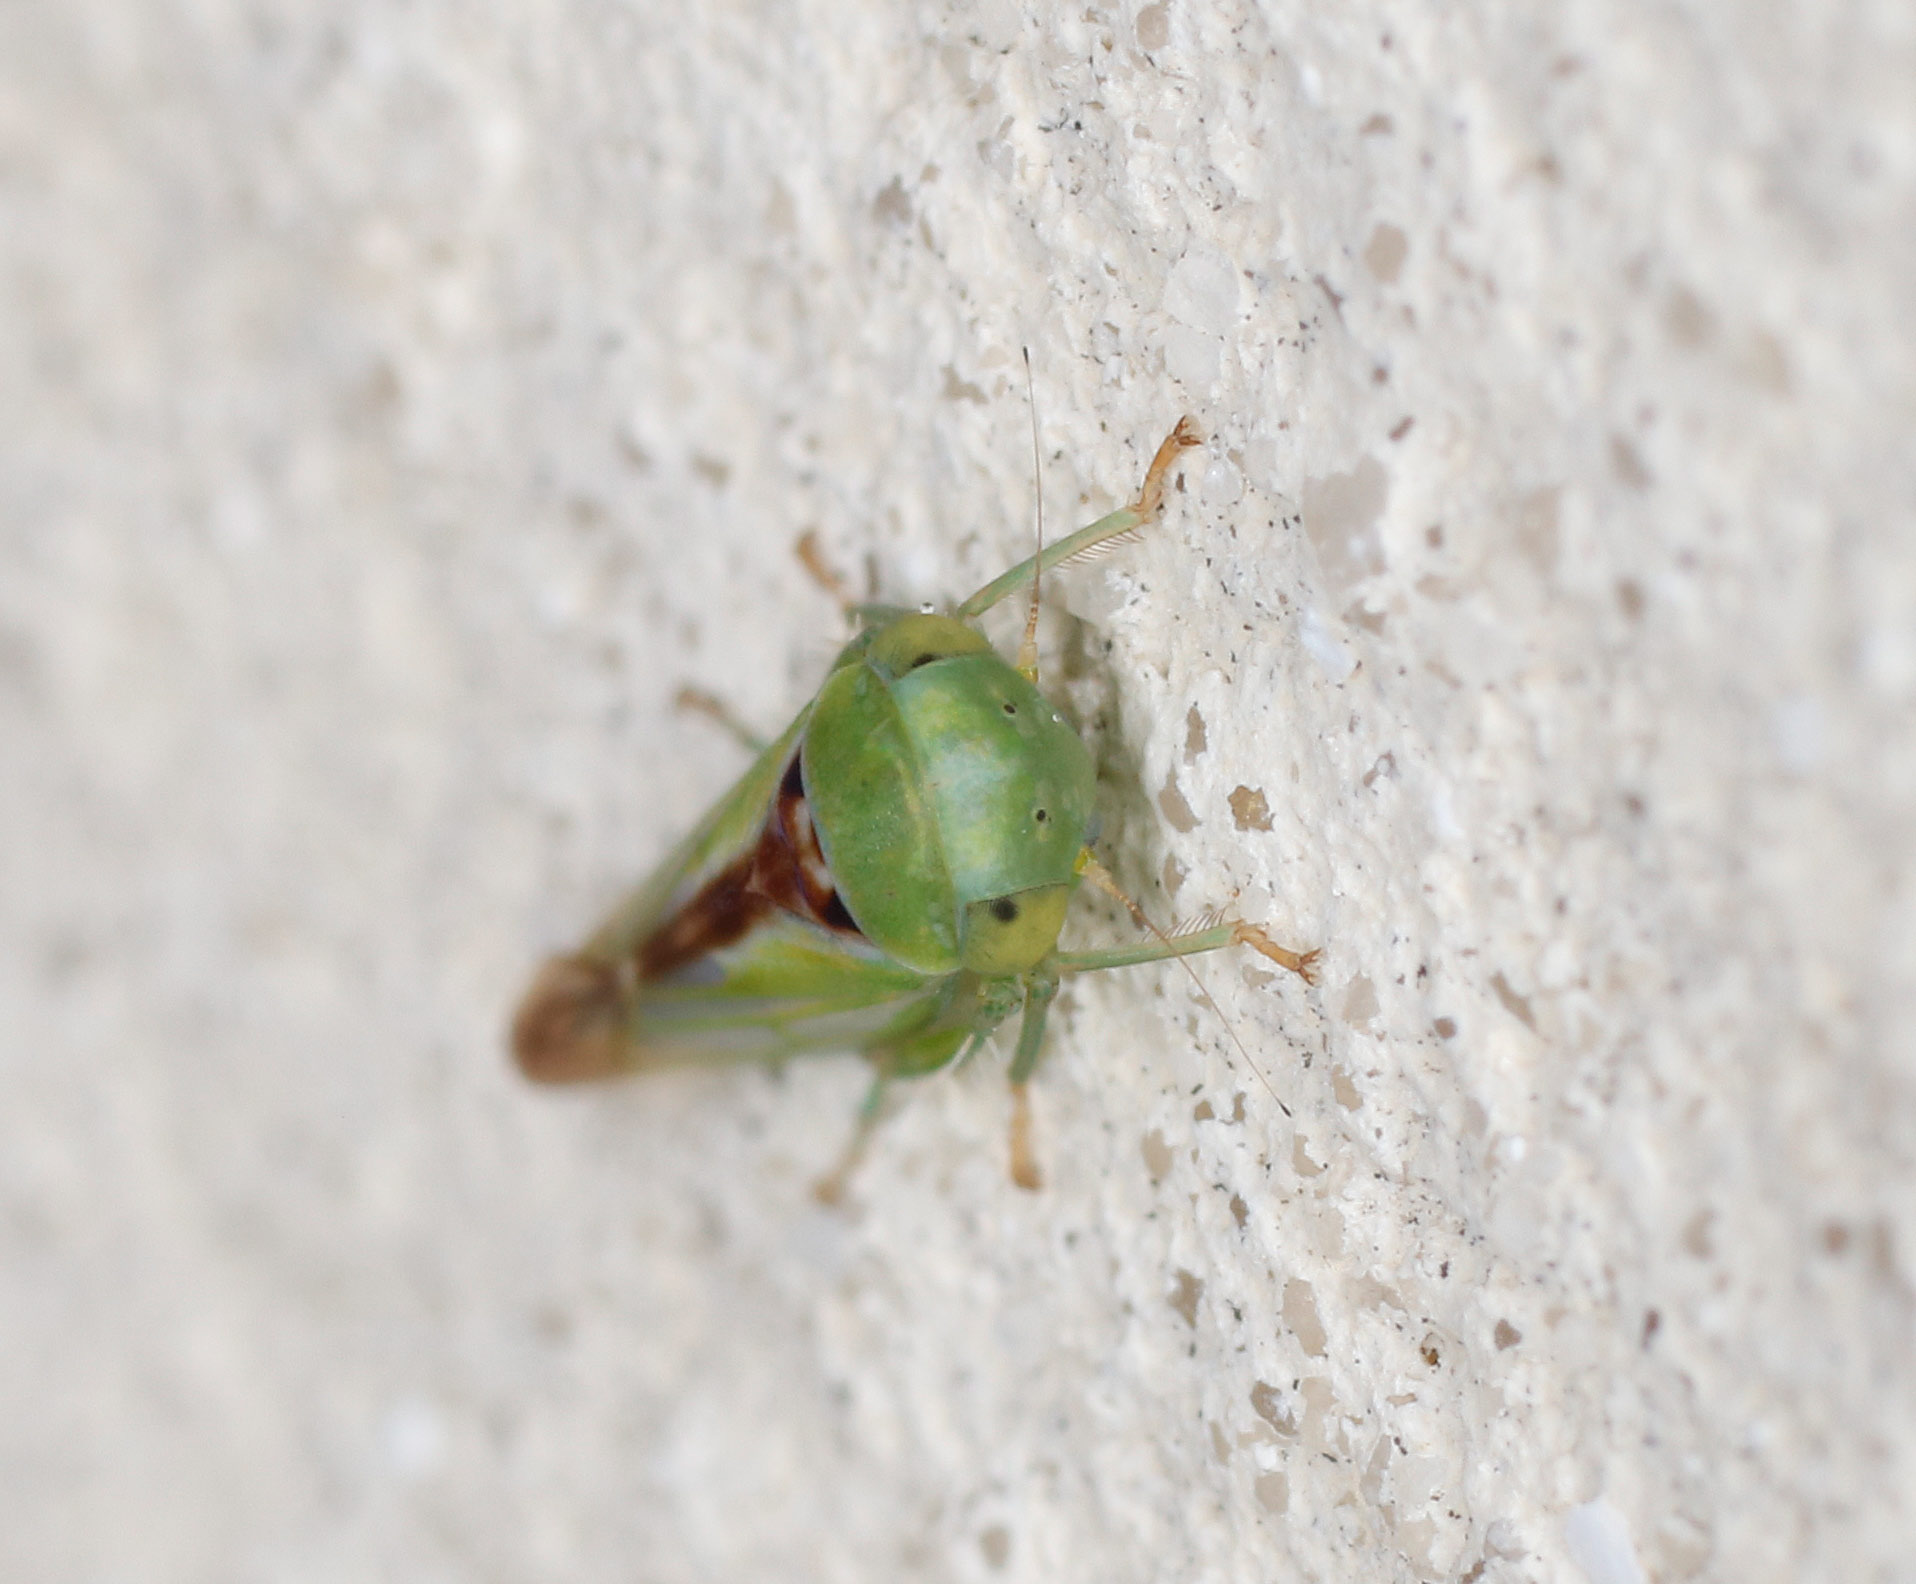 Cicadellidae: Viridicerus ustulatus